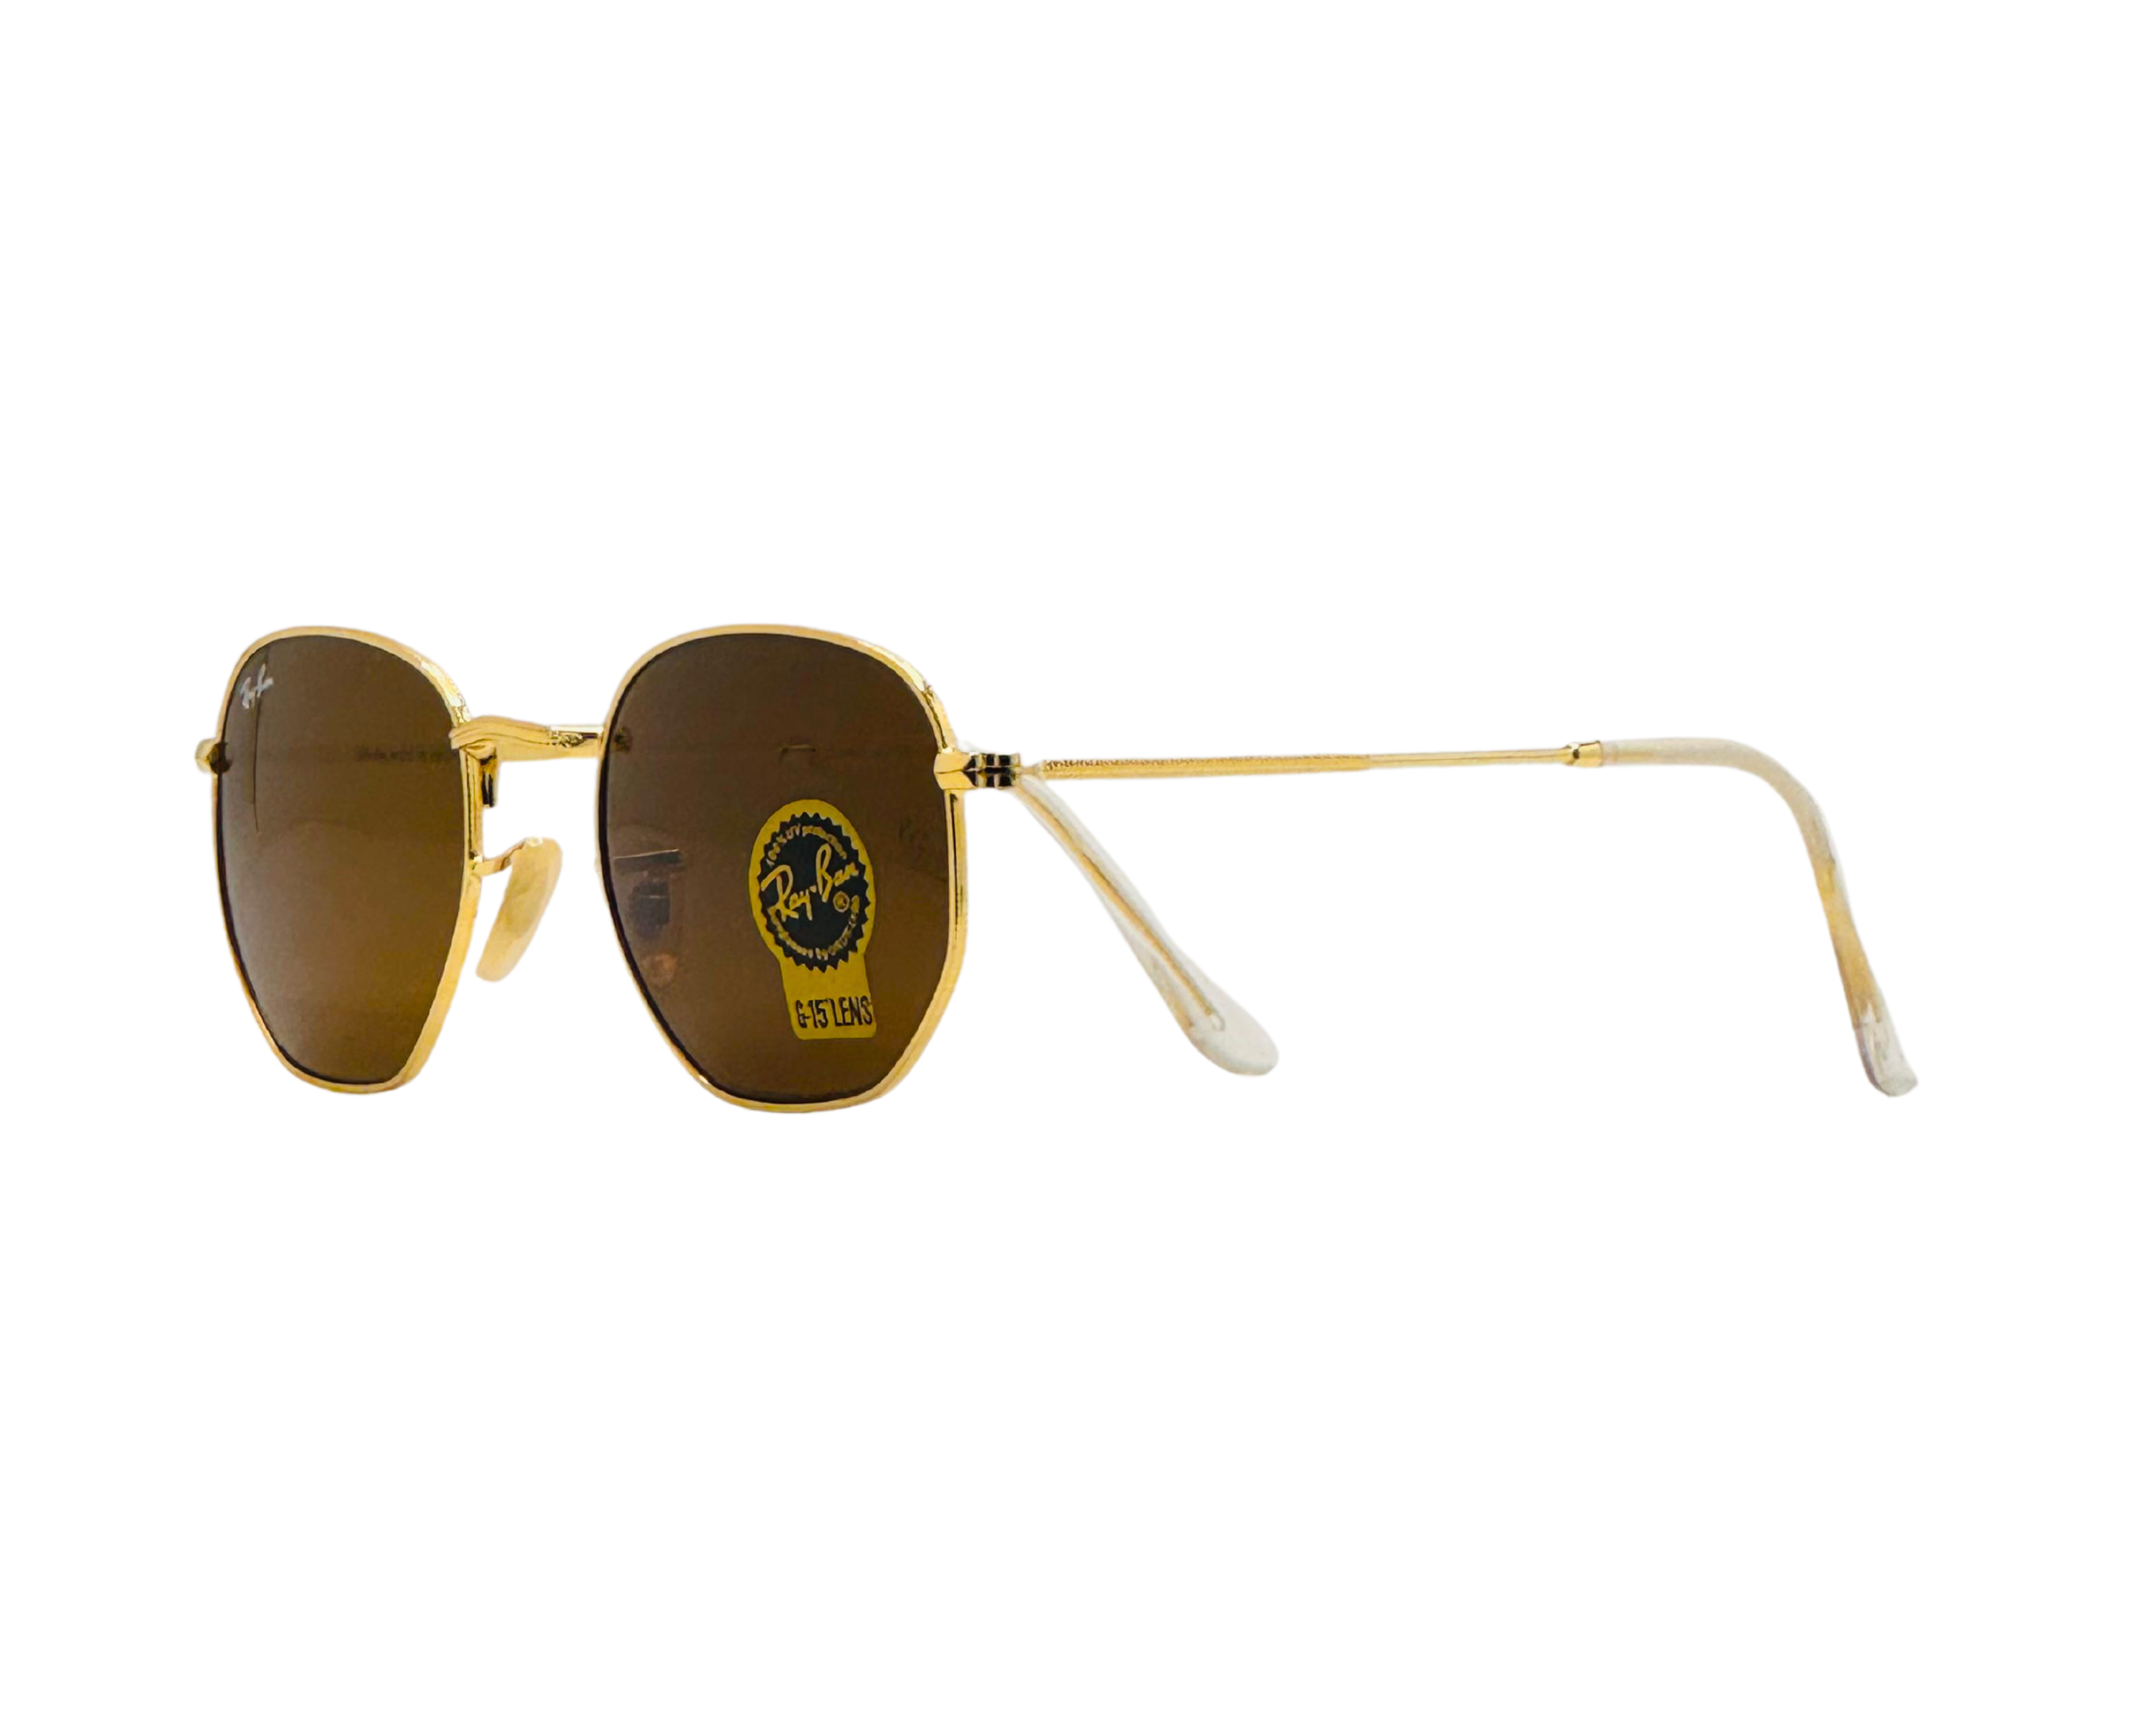 NS Deluxe - 3548 - Golden/Brown - Sunglasses